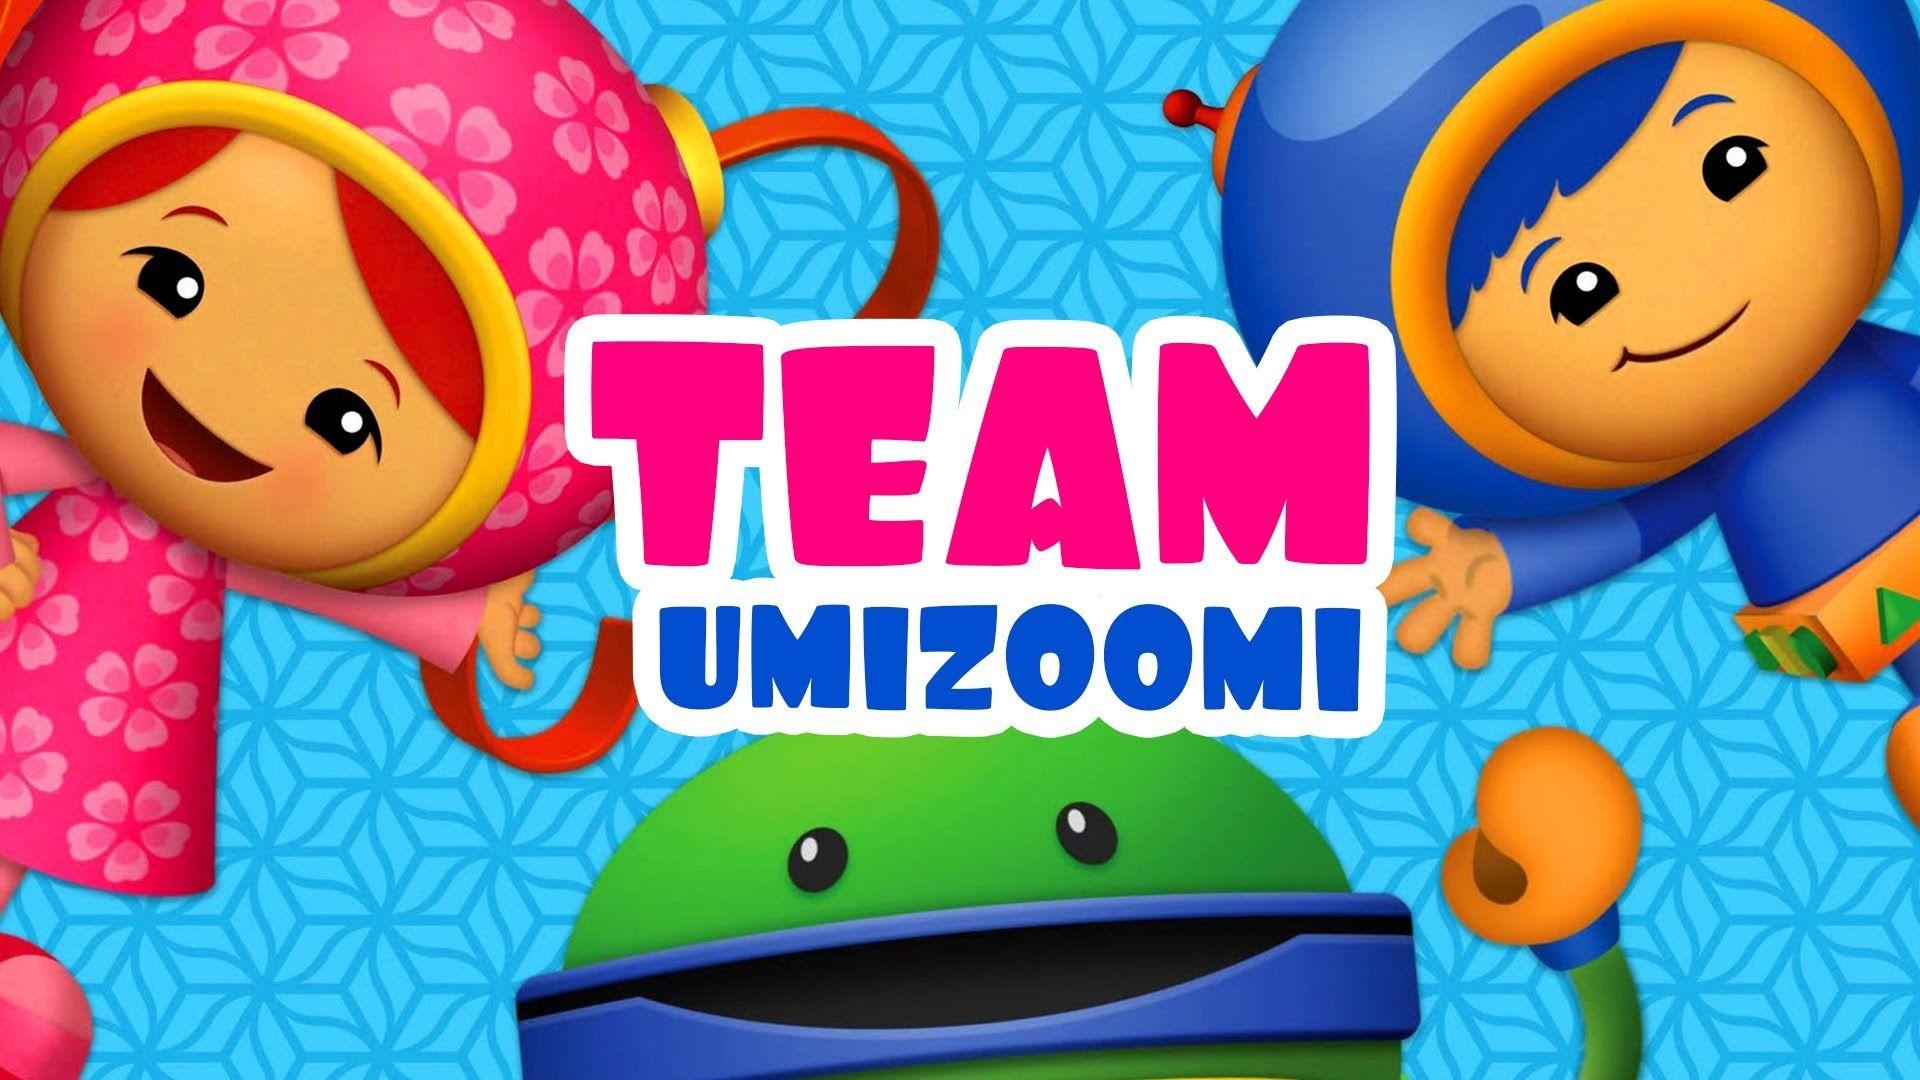 Team Umizoomi HD Wallpaper 52985 1920x1080 px